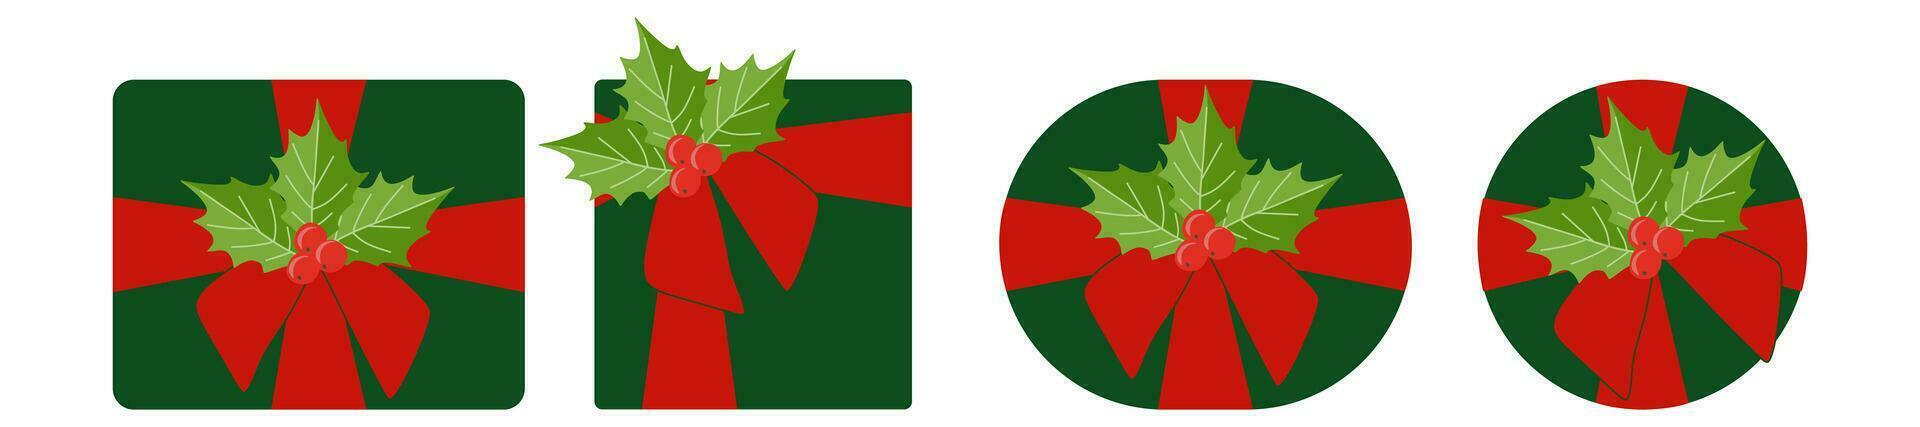 conjunto de verde regalo cajas con rojo cinta y acebo baya sucursales. Navidad temporada decoración. vector plano dibujos animados ilustración aislado en blanco. vistoso fiesta modelo para tarjeta postal, bandera